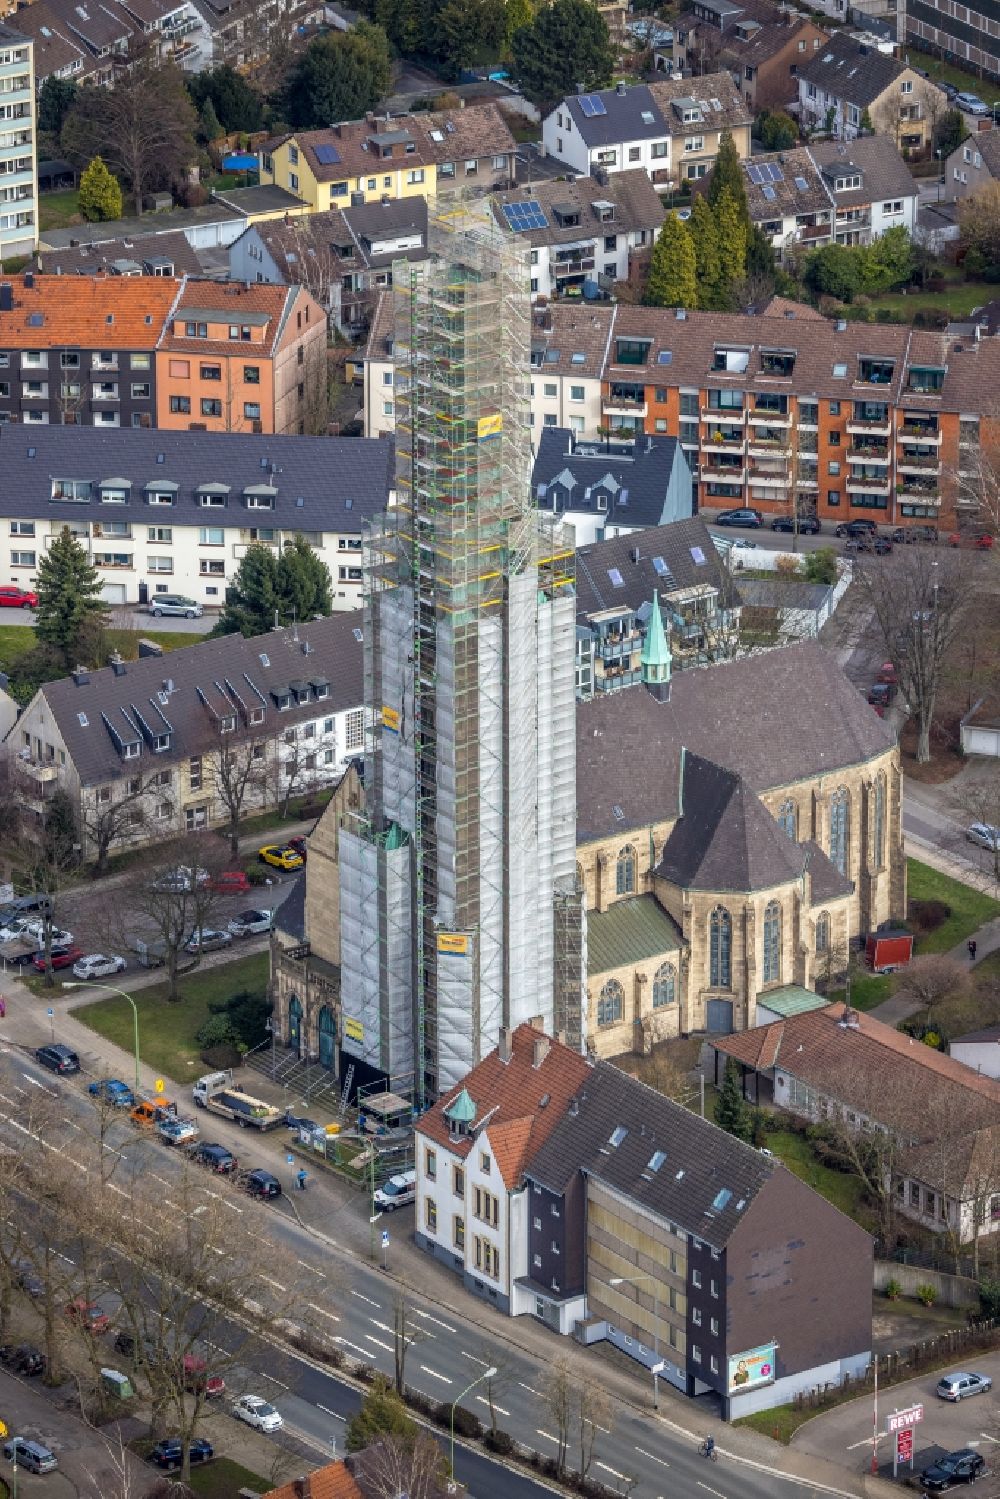 Luftbild Essen - Kirchengebäude St. Hubertus in Essen im Bundesland Nordrhein-Westfalen, Deutschland